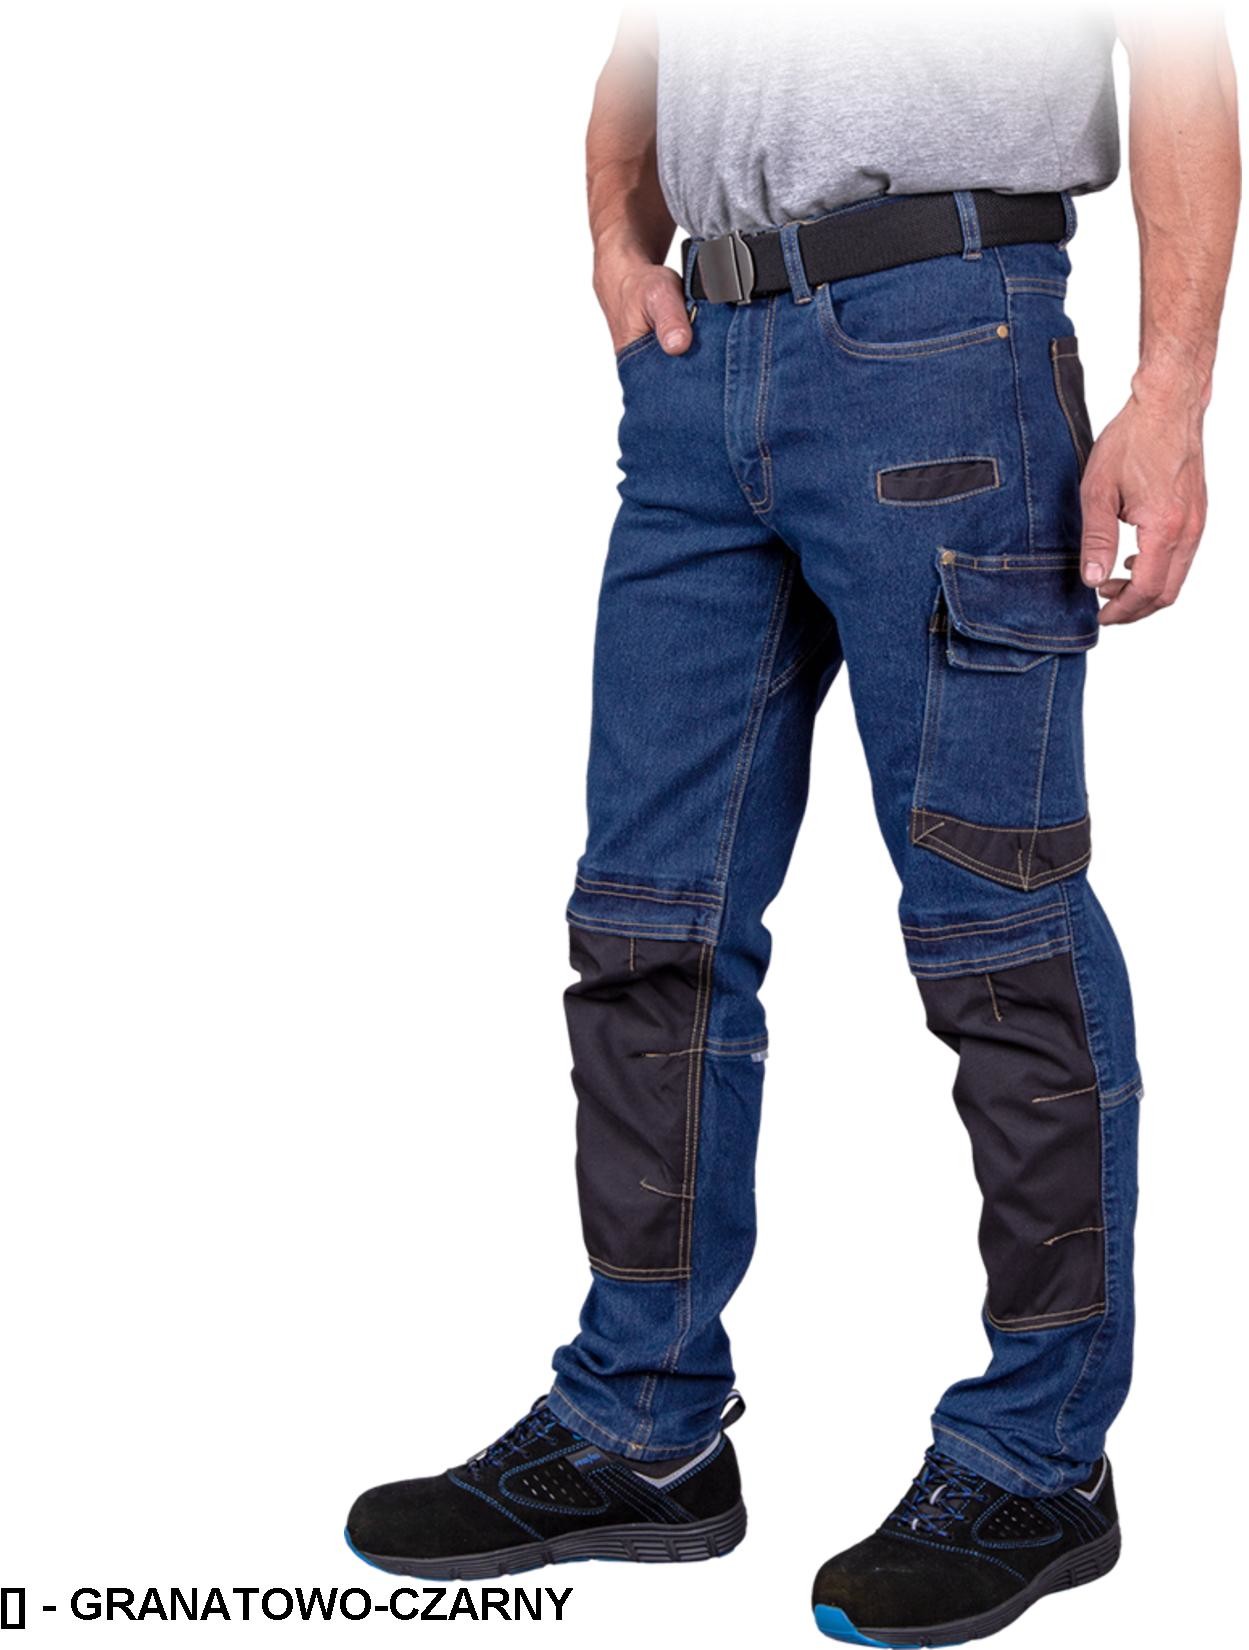 Reis JEANS303-T - spodnie ochronne do pasa, 7 kieszeni, odblaski - 2 kolory - rozmiary 46-60. JEANS303-T